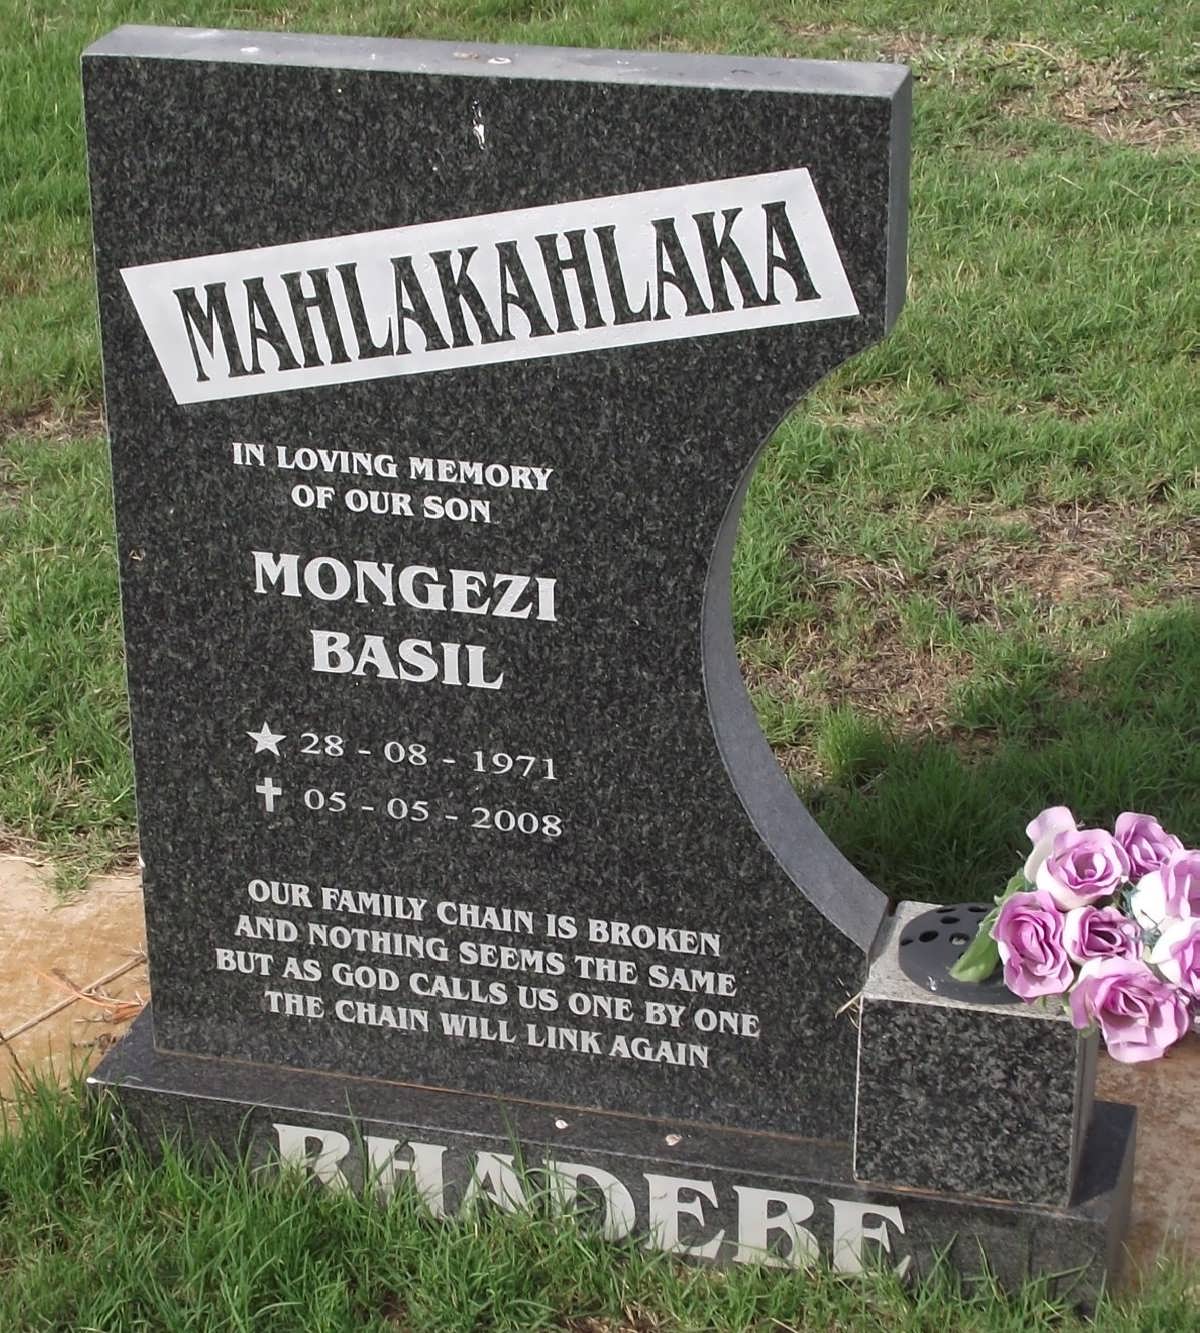 MAHLAKAHLAKA Mongezi Basil 1971-2008